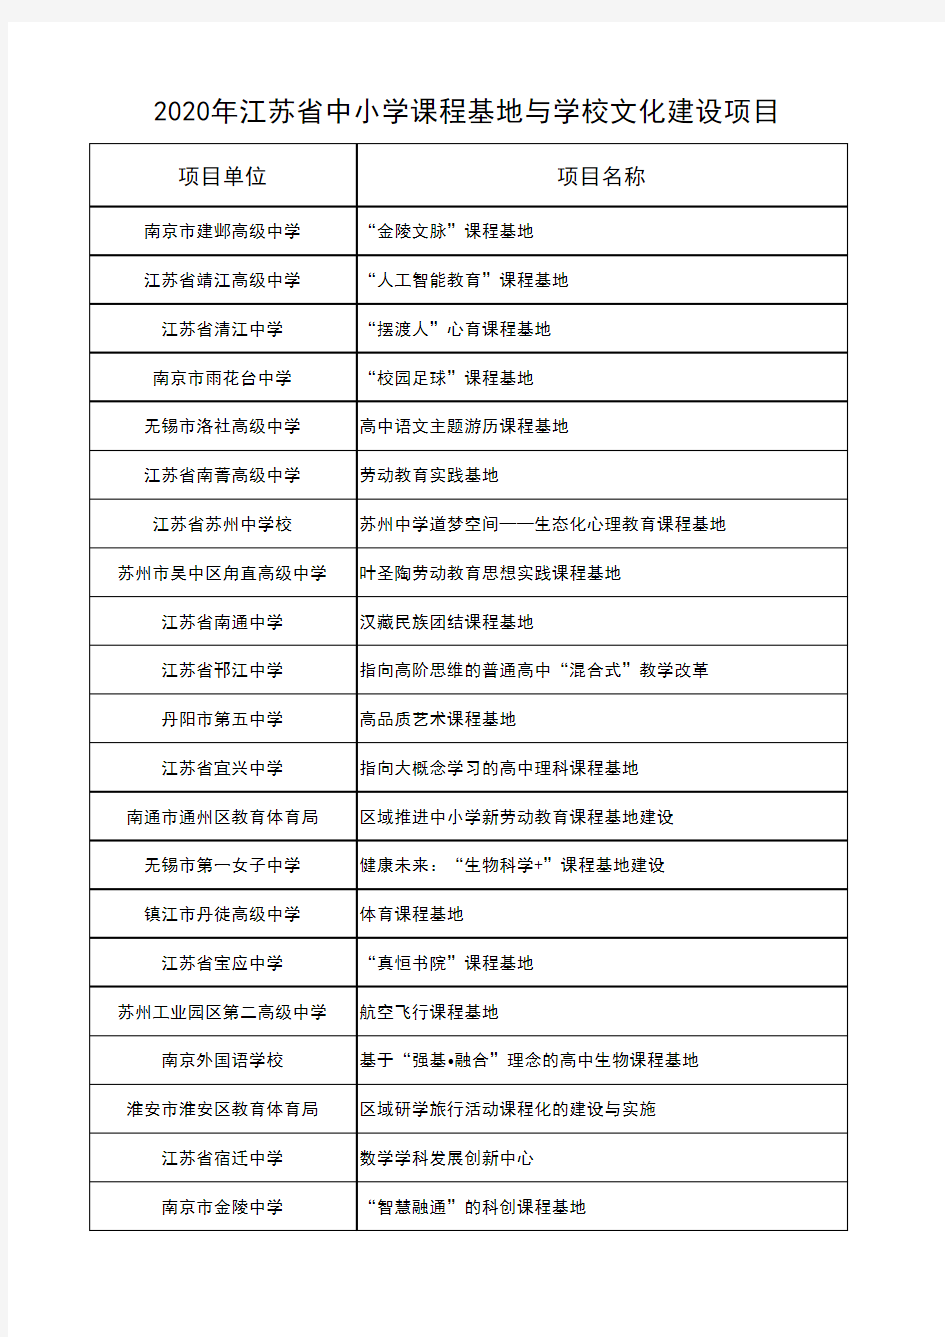 2020年江苏省基础教育内涵建设项目名单